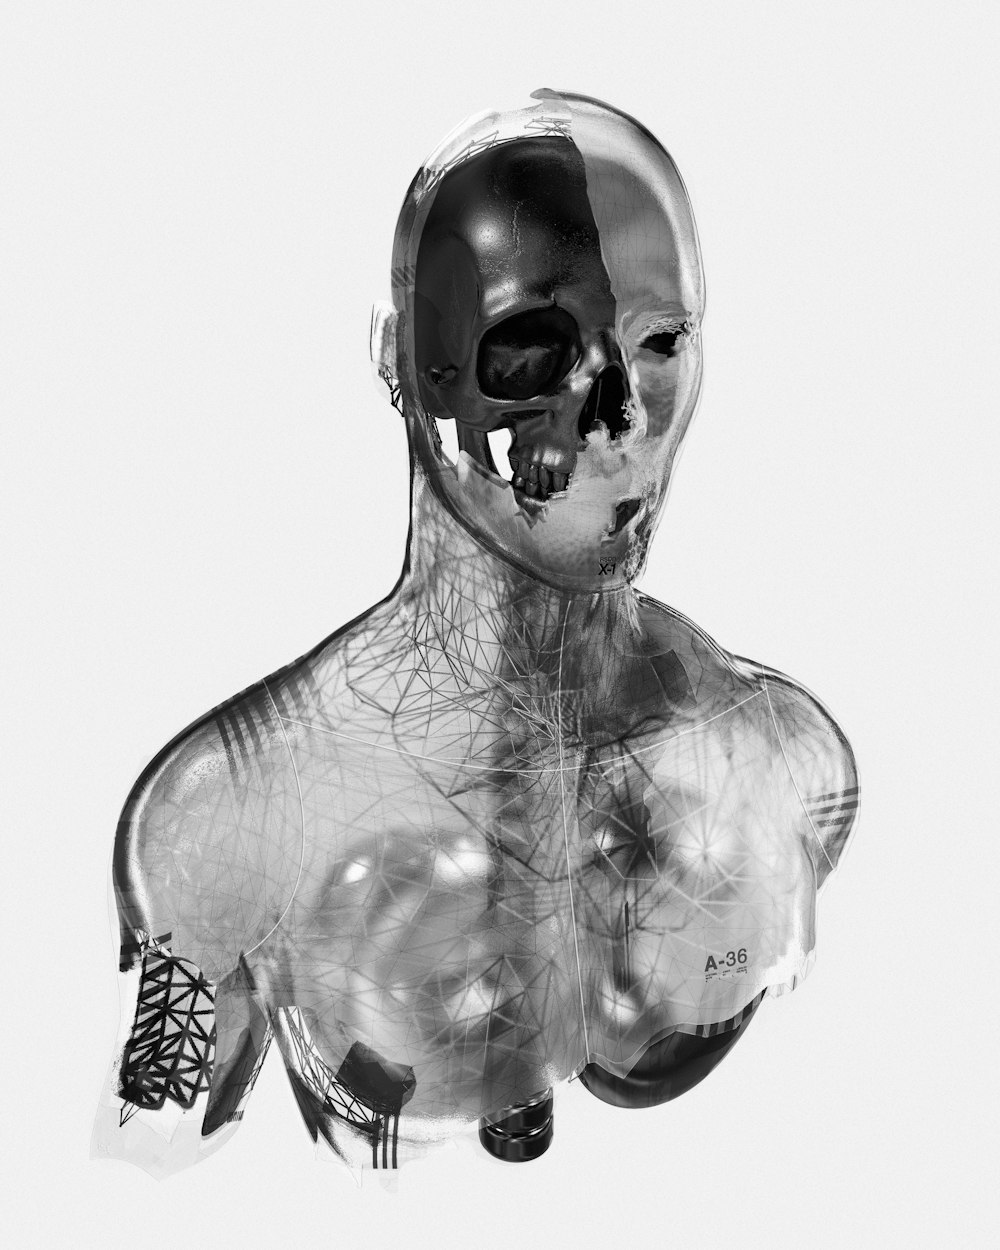 Una foto en blanco y negro de un cuerpo humano